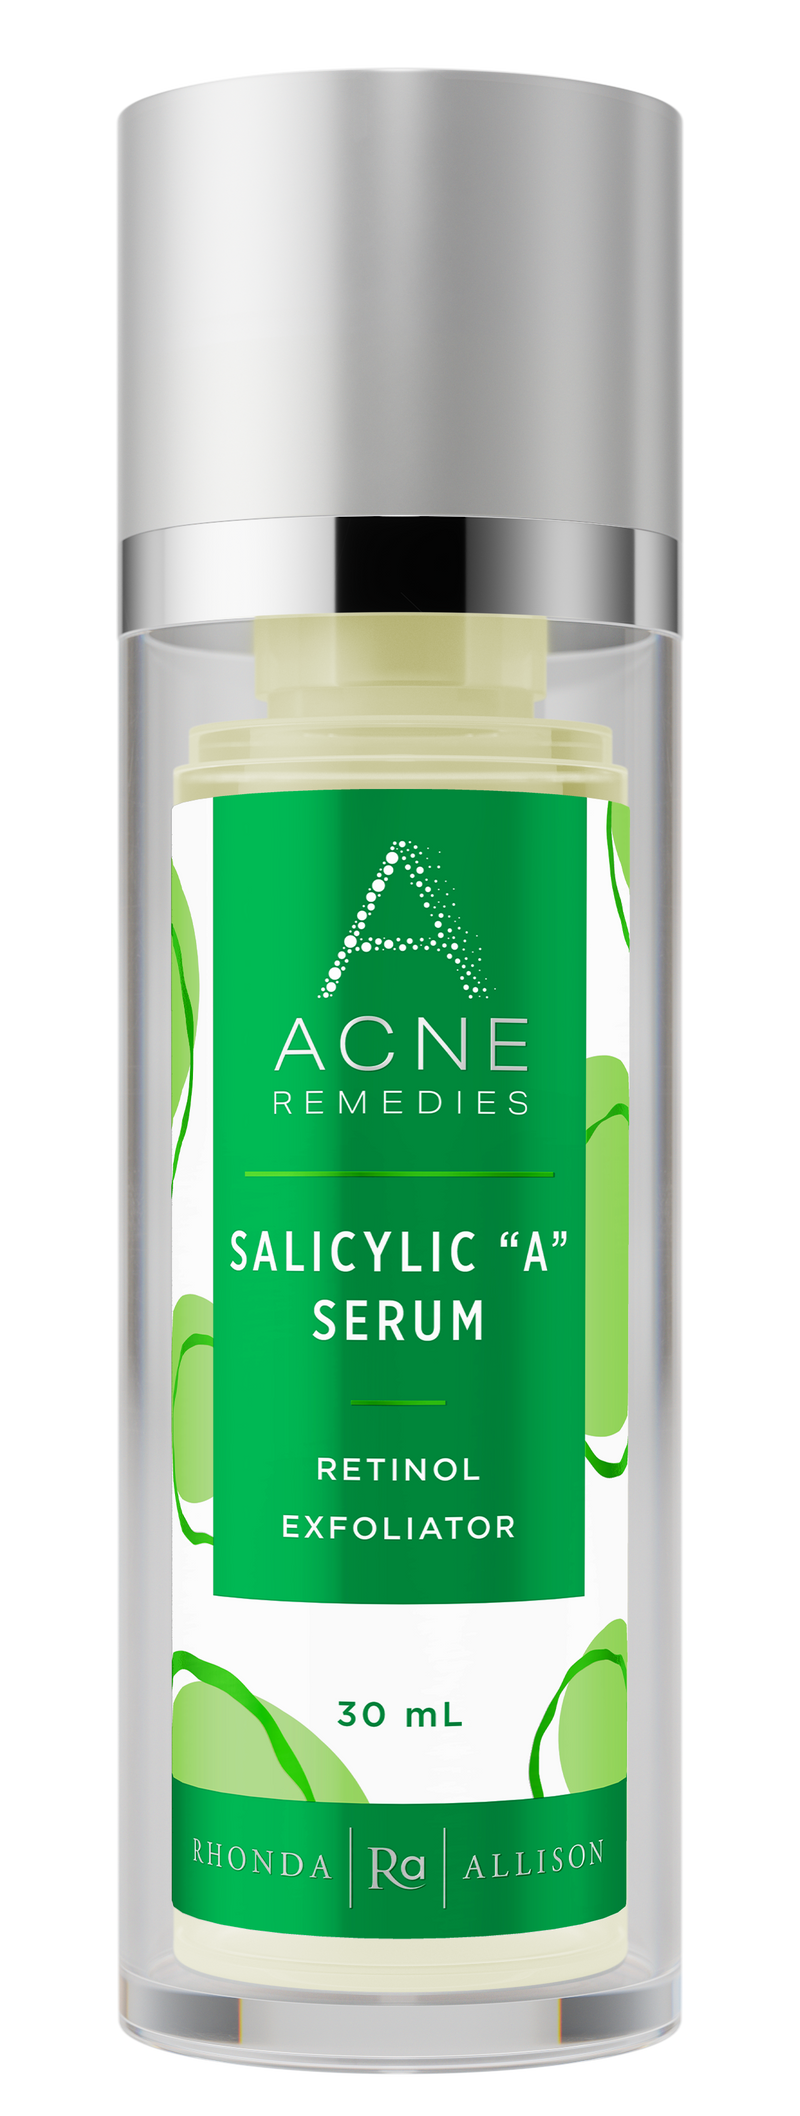 Salicylic "A" Serum